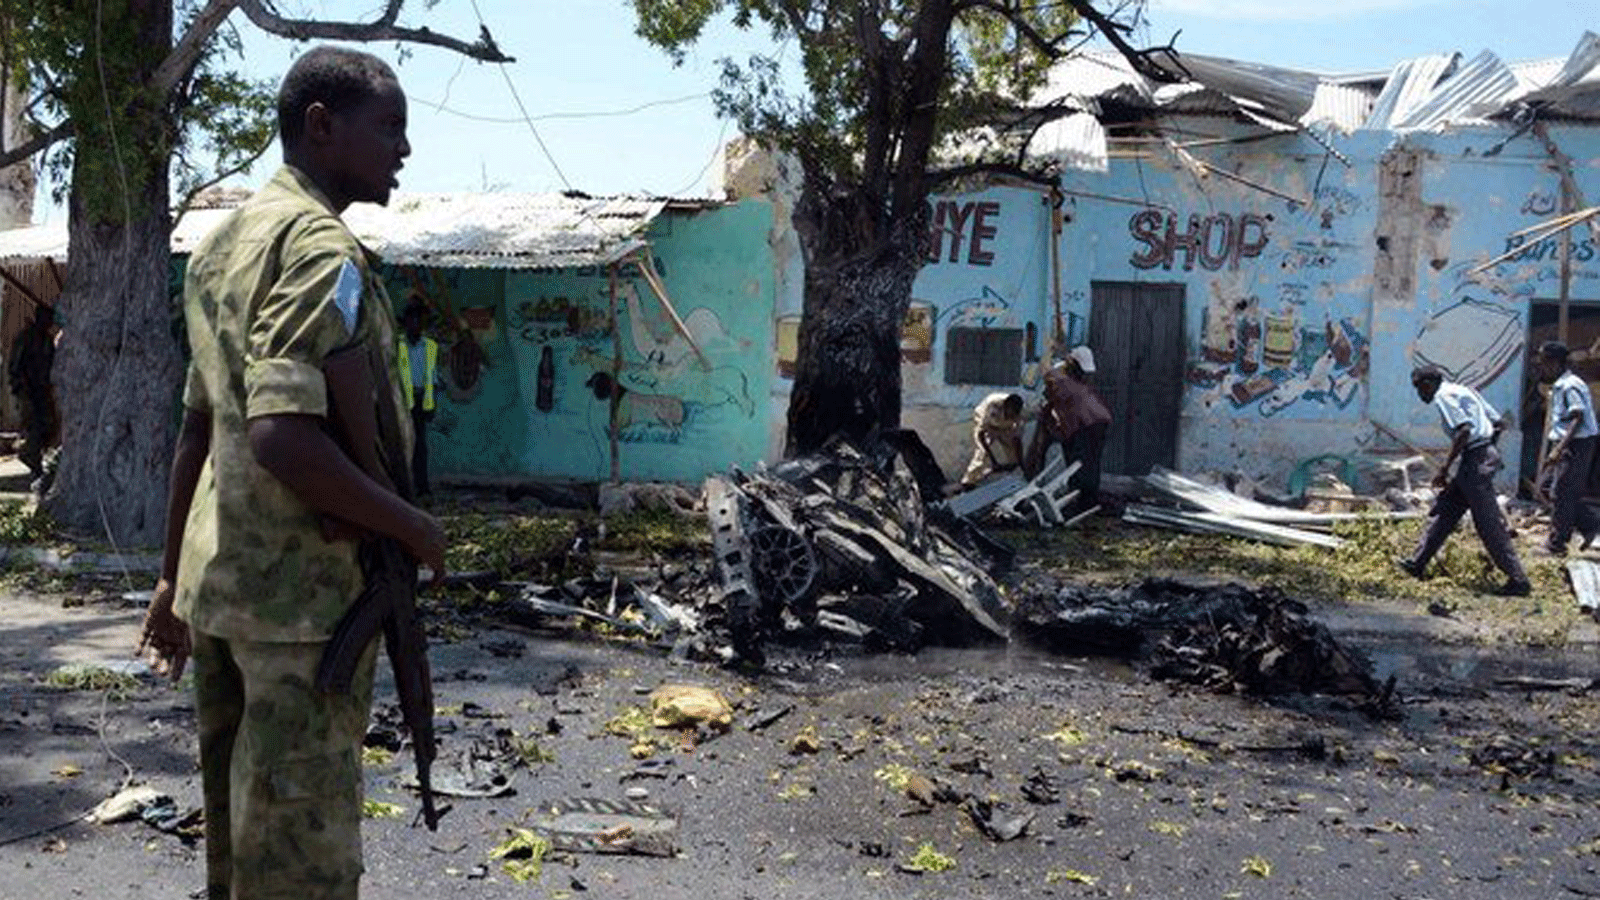 صورة لأحد أفراد الأمن أثناء قيامه بتأمين موقع هجوم بسيارة مفخخة في 4 فبراير 2019 في منطقة هامروين في العاصمة الصومالية مقديشو